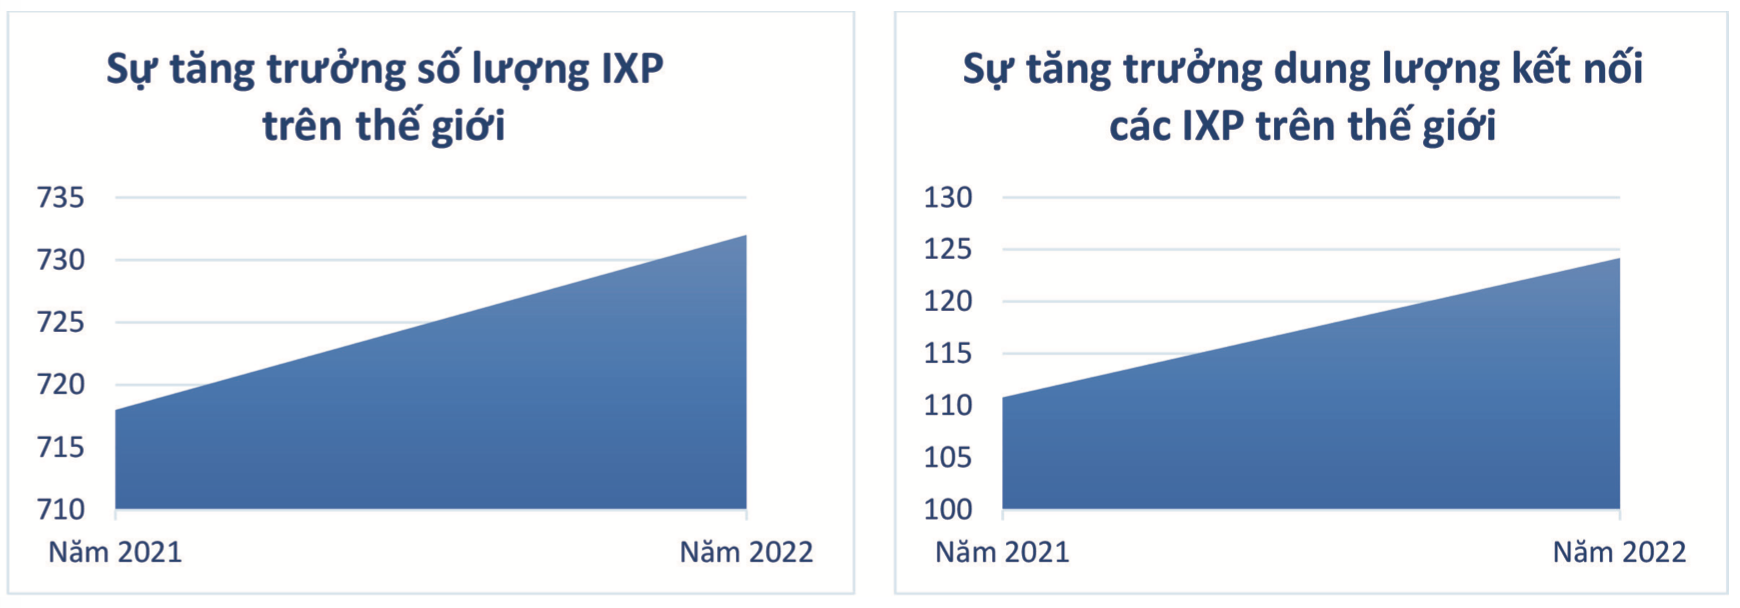 Trạm trung chuyển Internet quốc gia với sứ mệnh phát triển hạ tầng số Việt Nam - Ảnh 2.